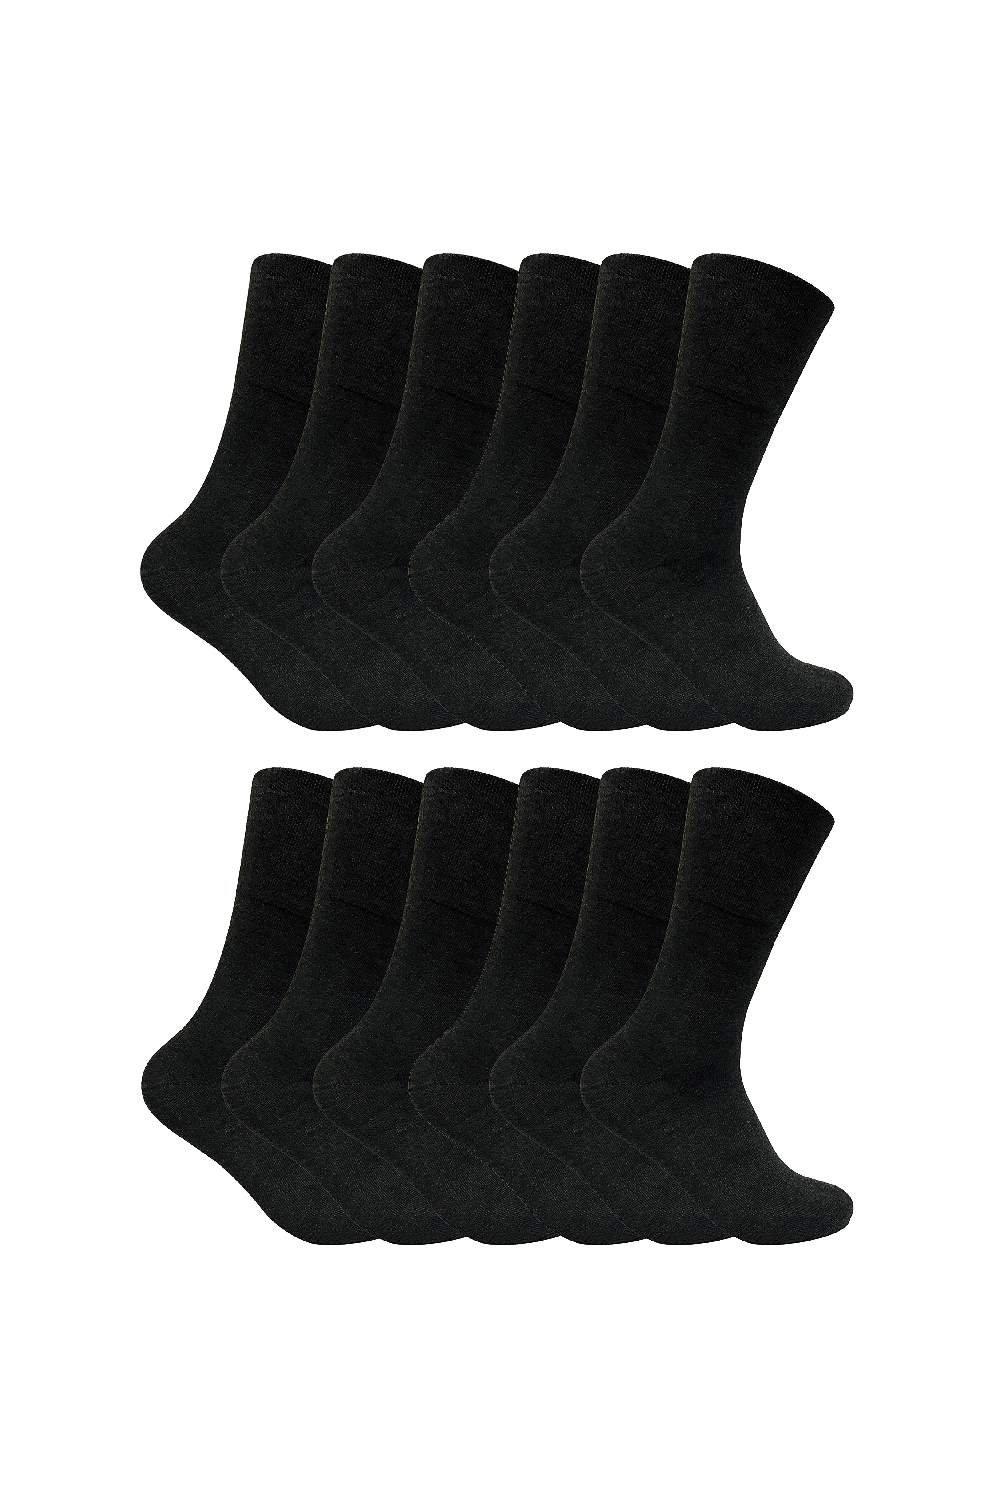 12 Pairs Thermal Diabetic Socks - Extra Wide Diabetic Socks